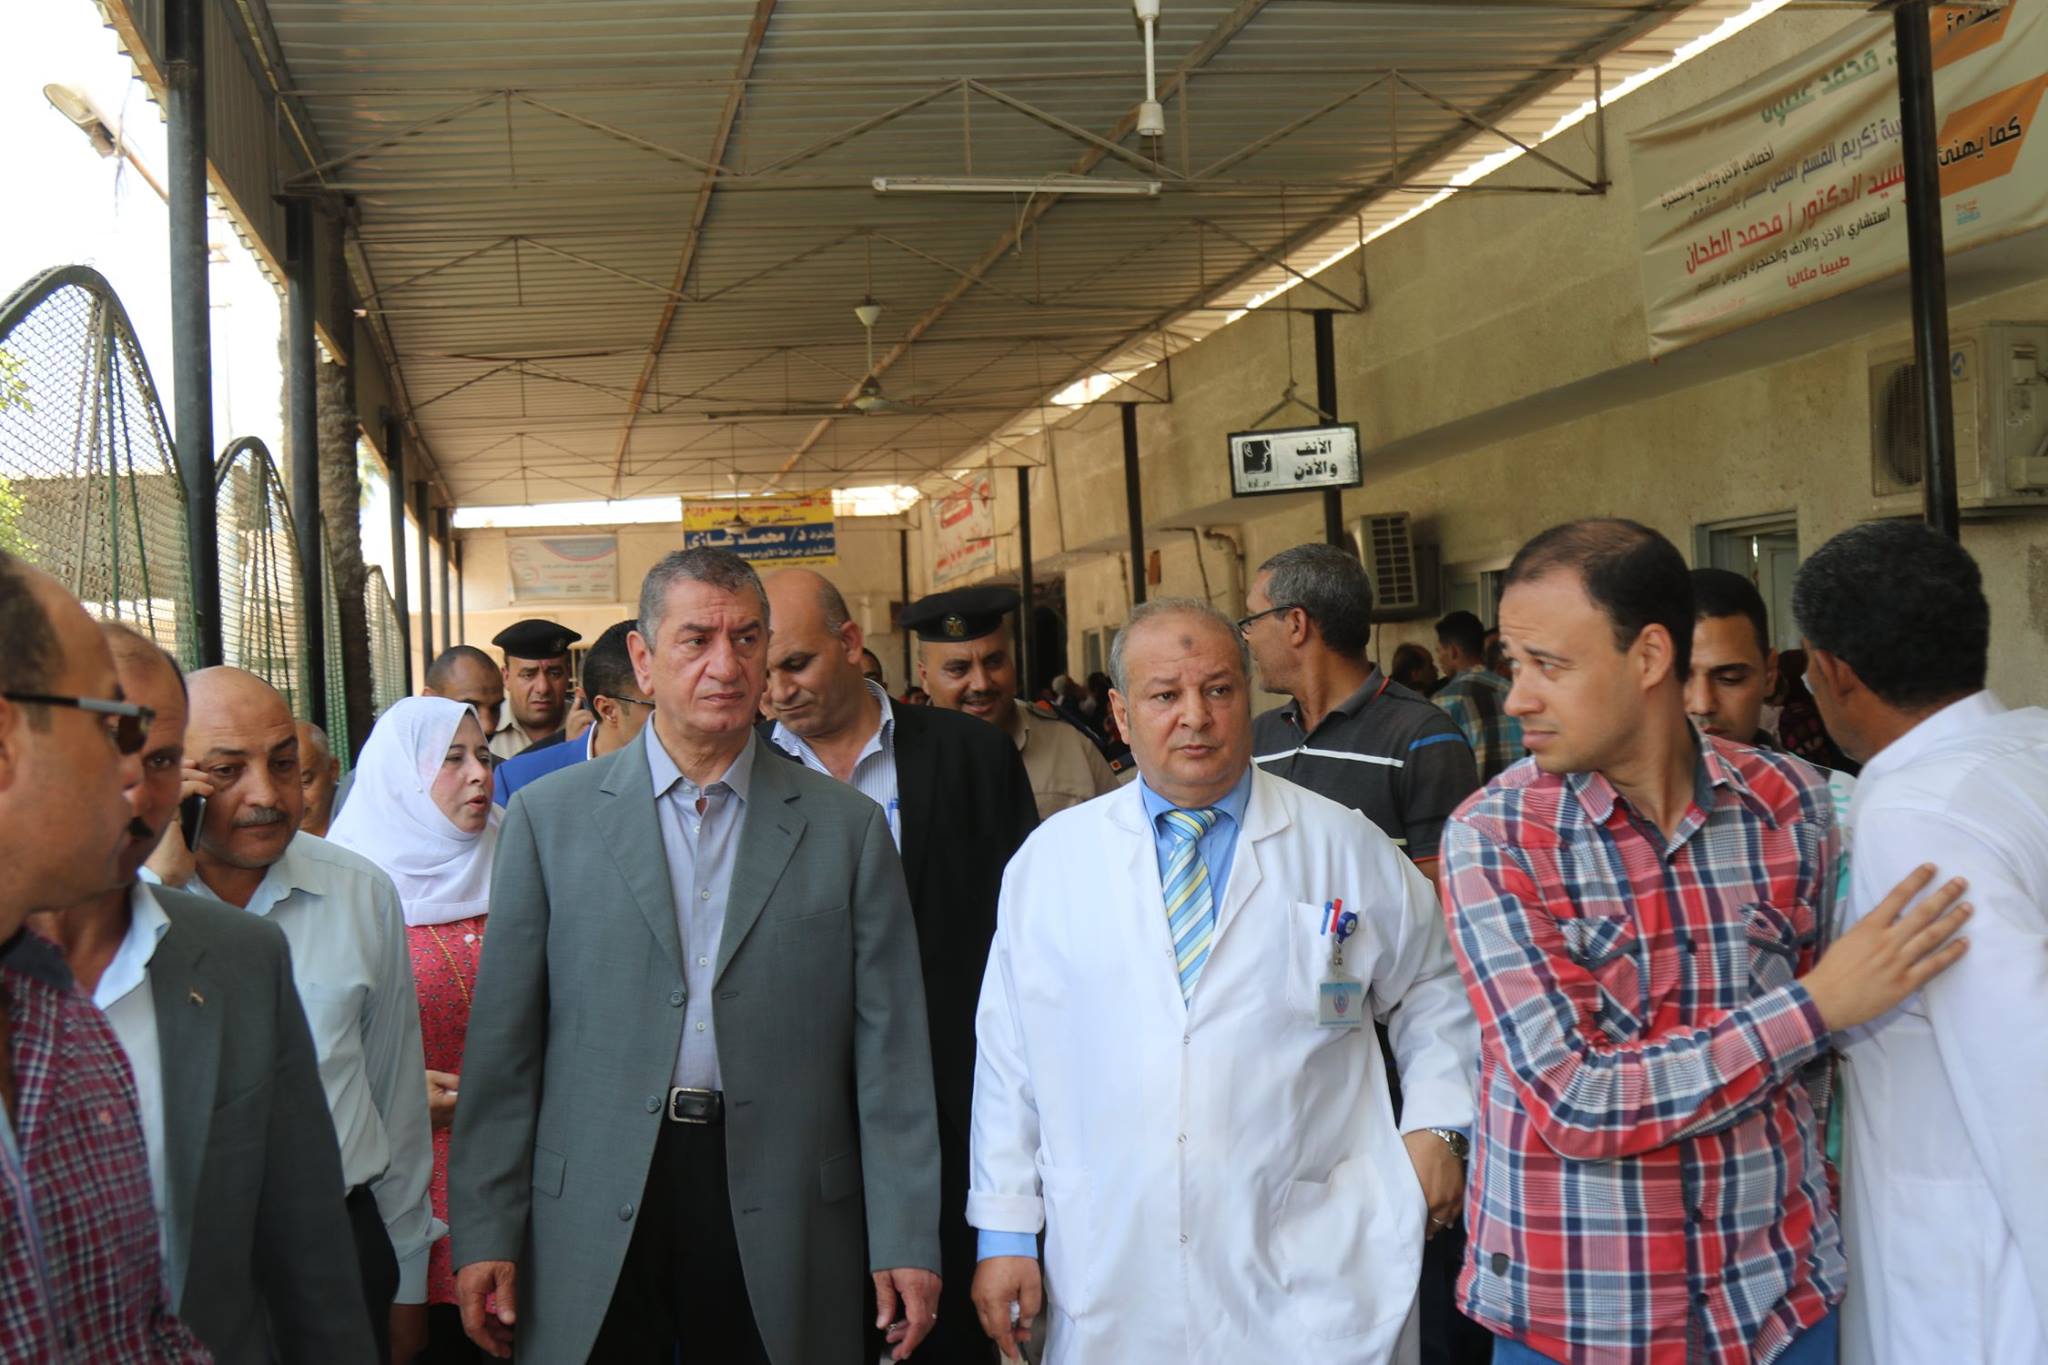  بالفيديو : فى زيارة مفاجئة للمستشفى العام محافظ كفر الشيخ يحيل 47 طبيباً للتحقيق